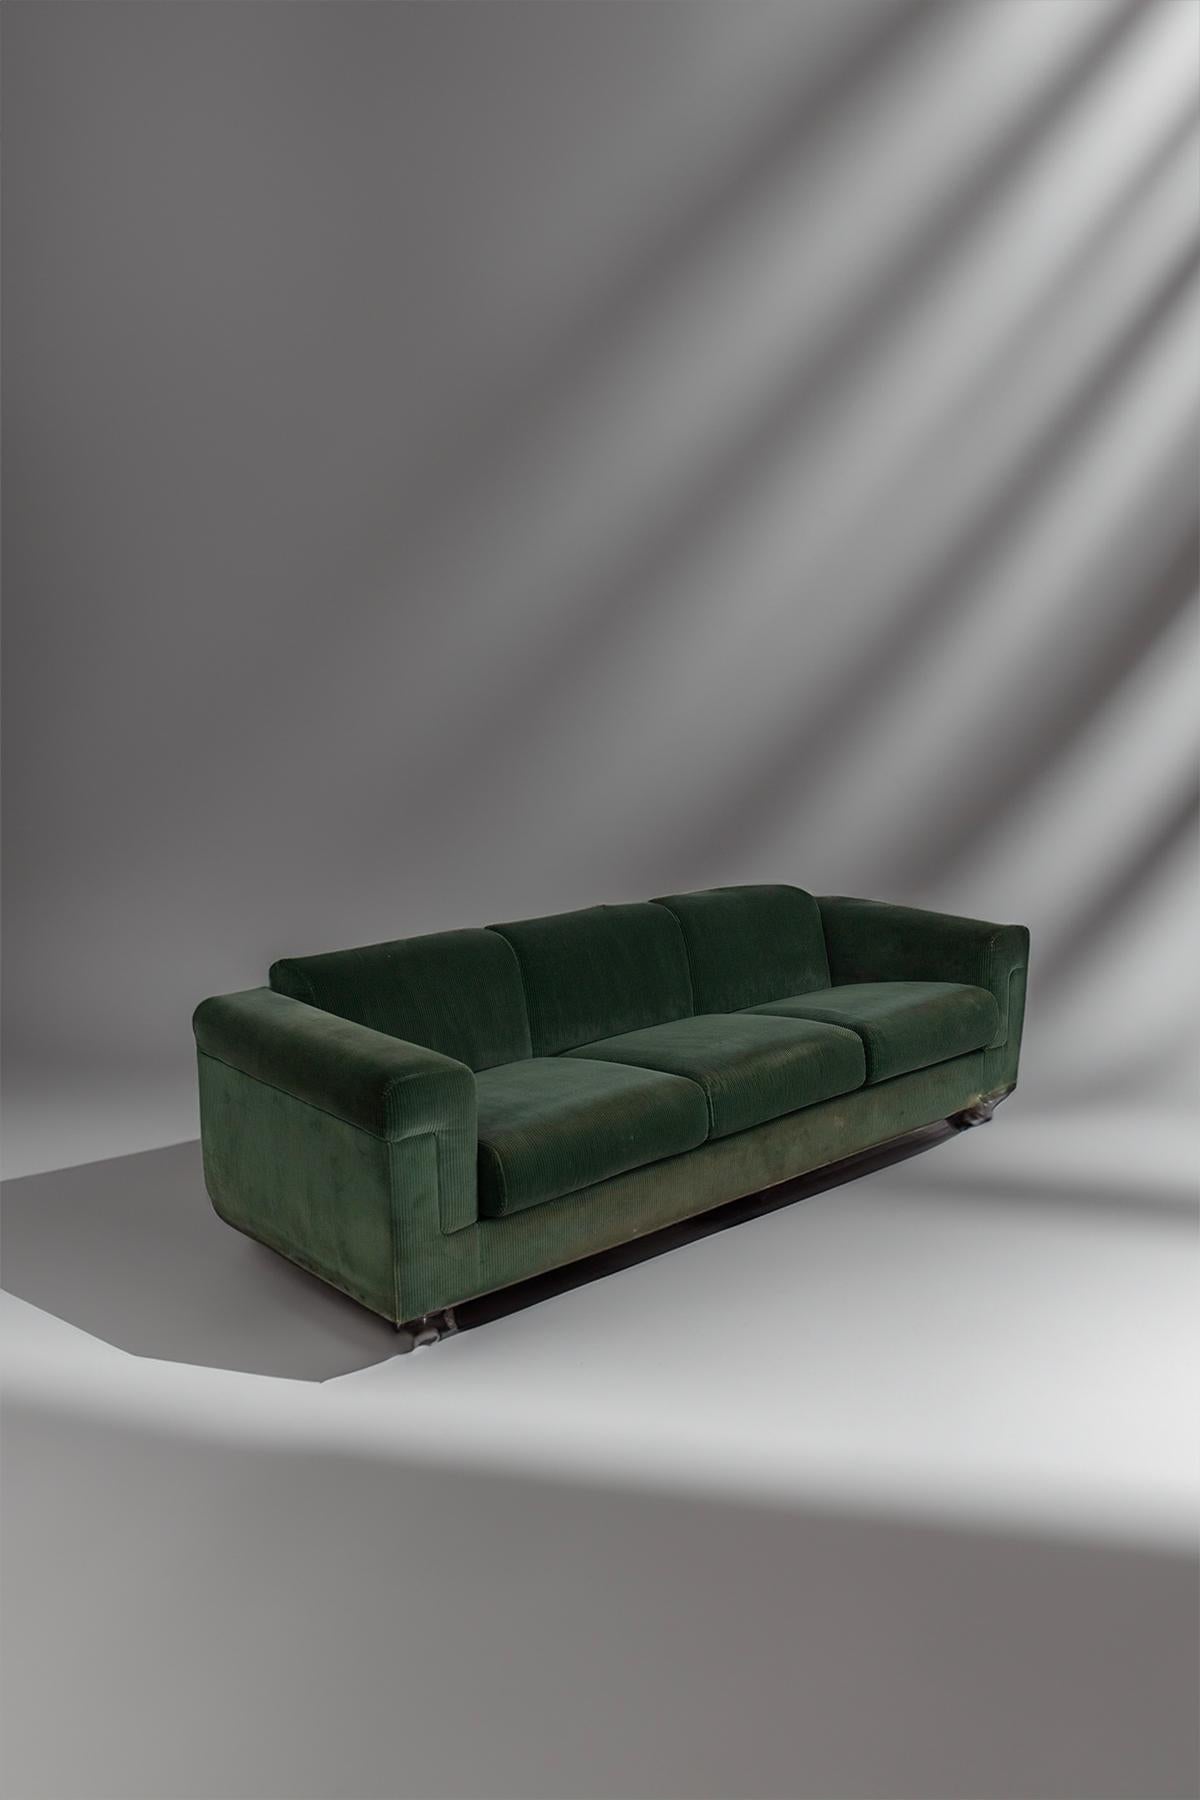 Il existe un meuble qui incarne l'esprit des années 1970 avec une élégance inégalée : le canapé 